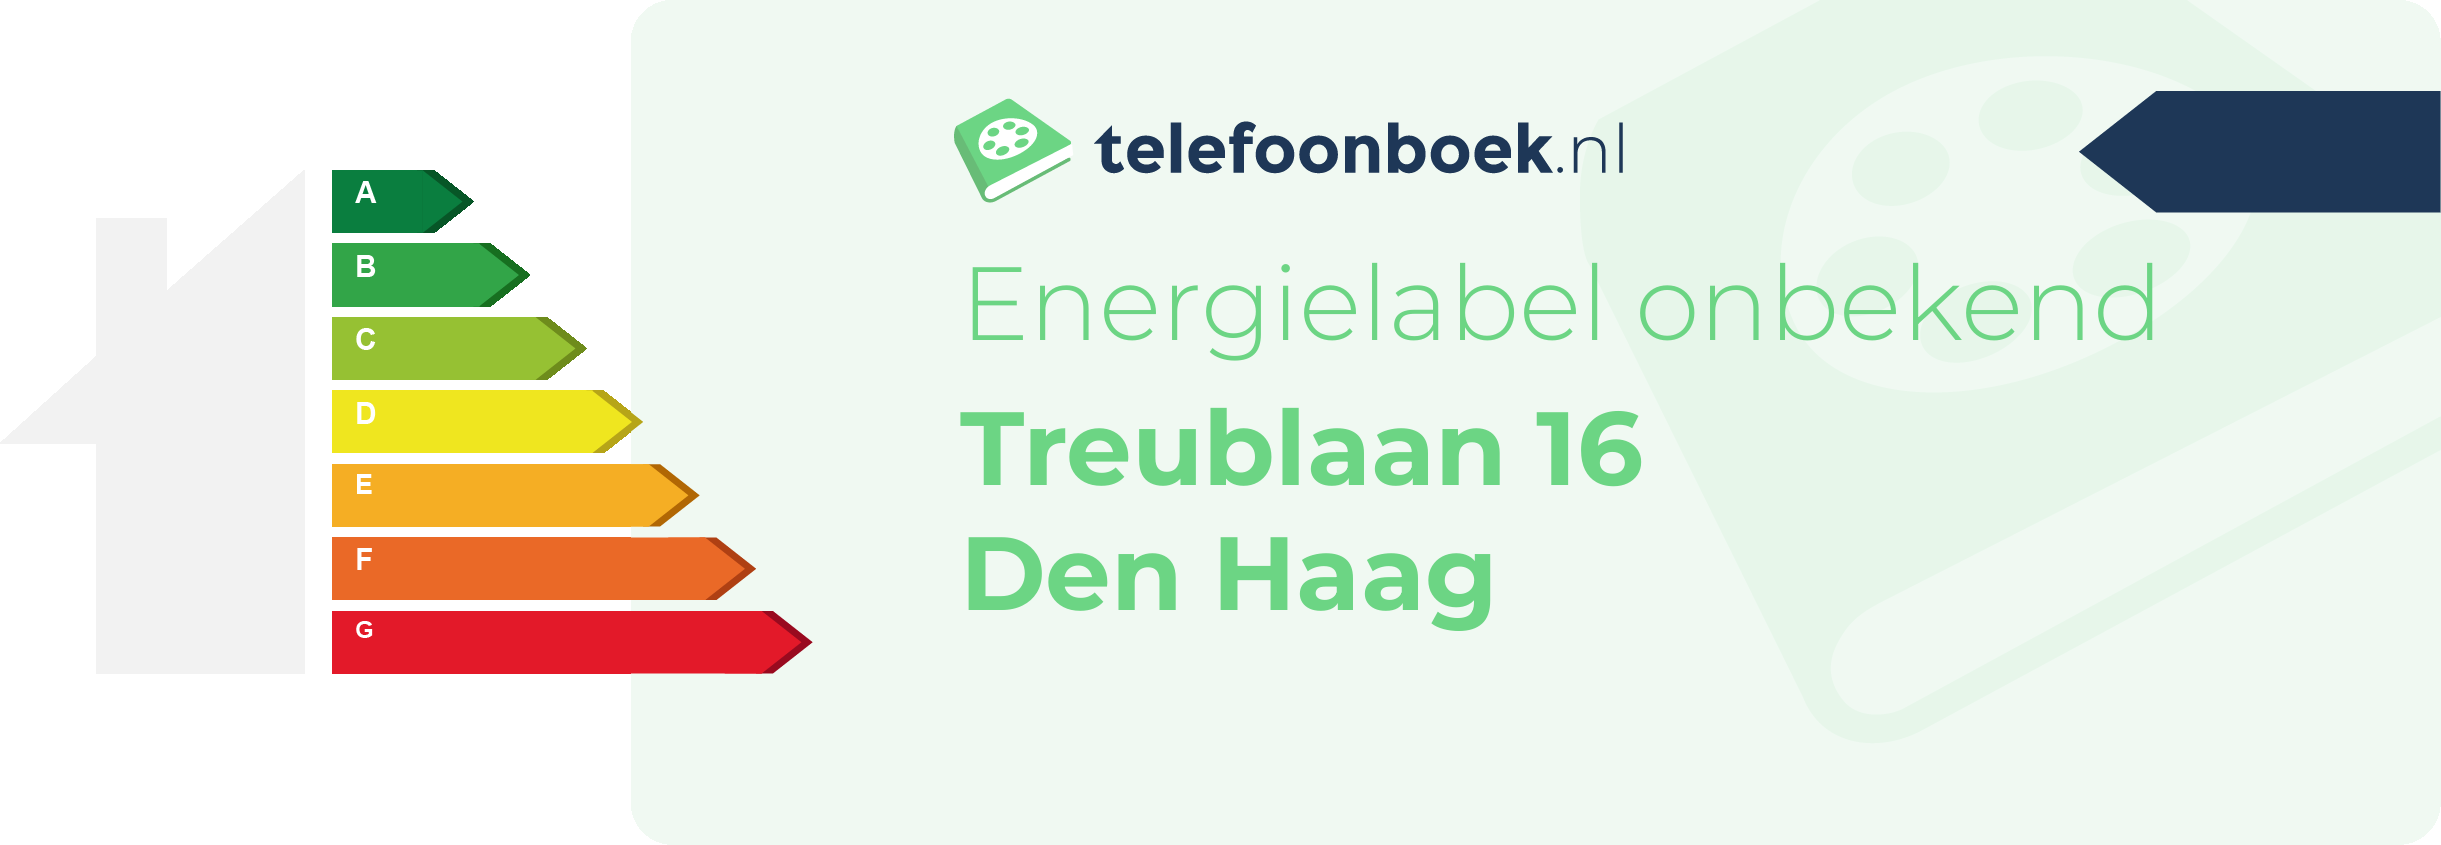 Energielabel Treublaan 16 Den Haag